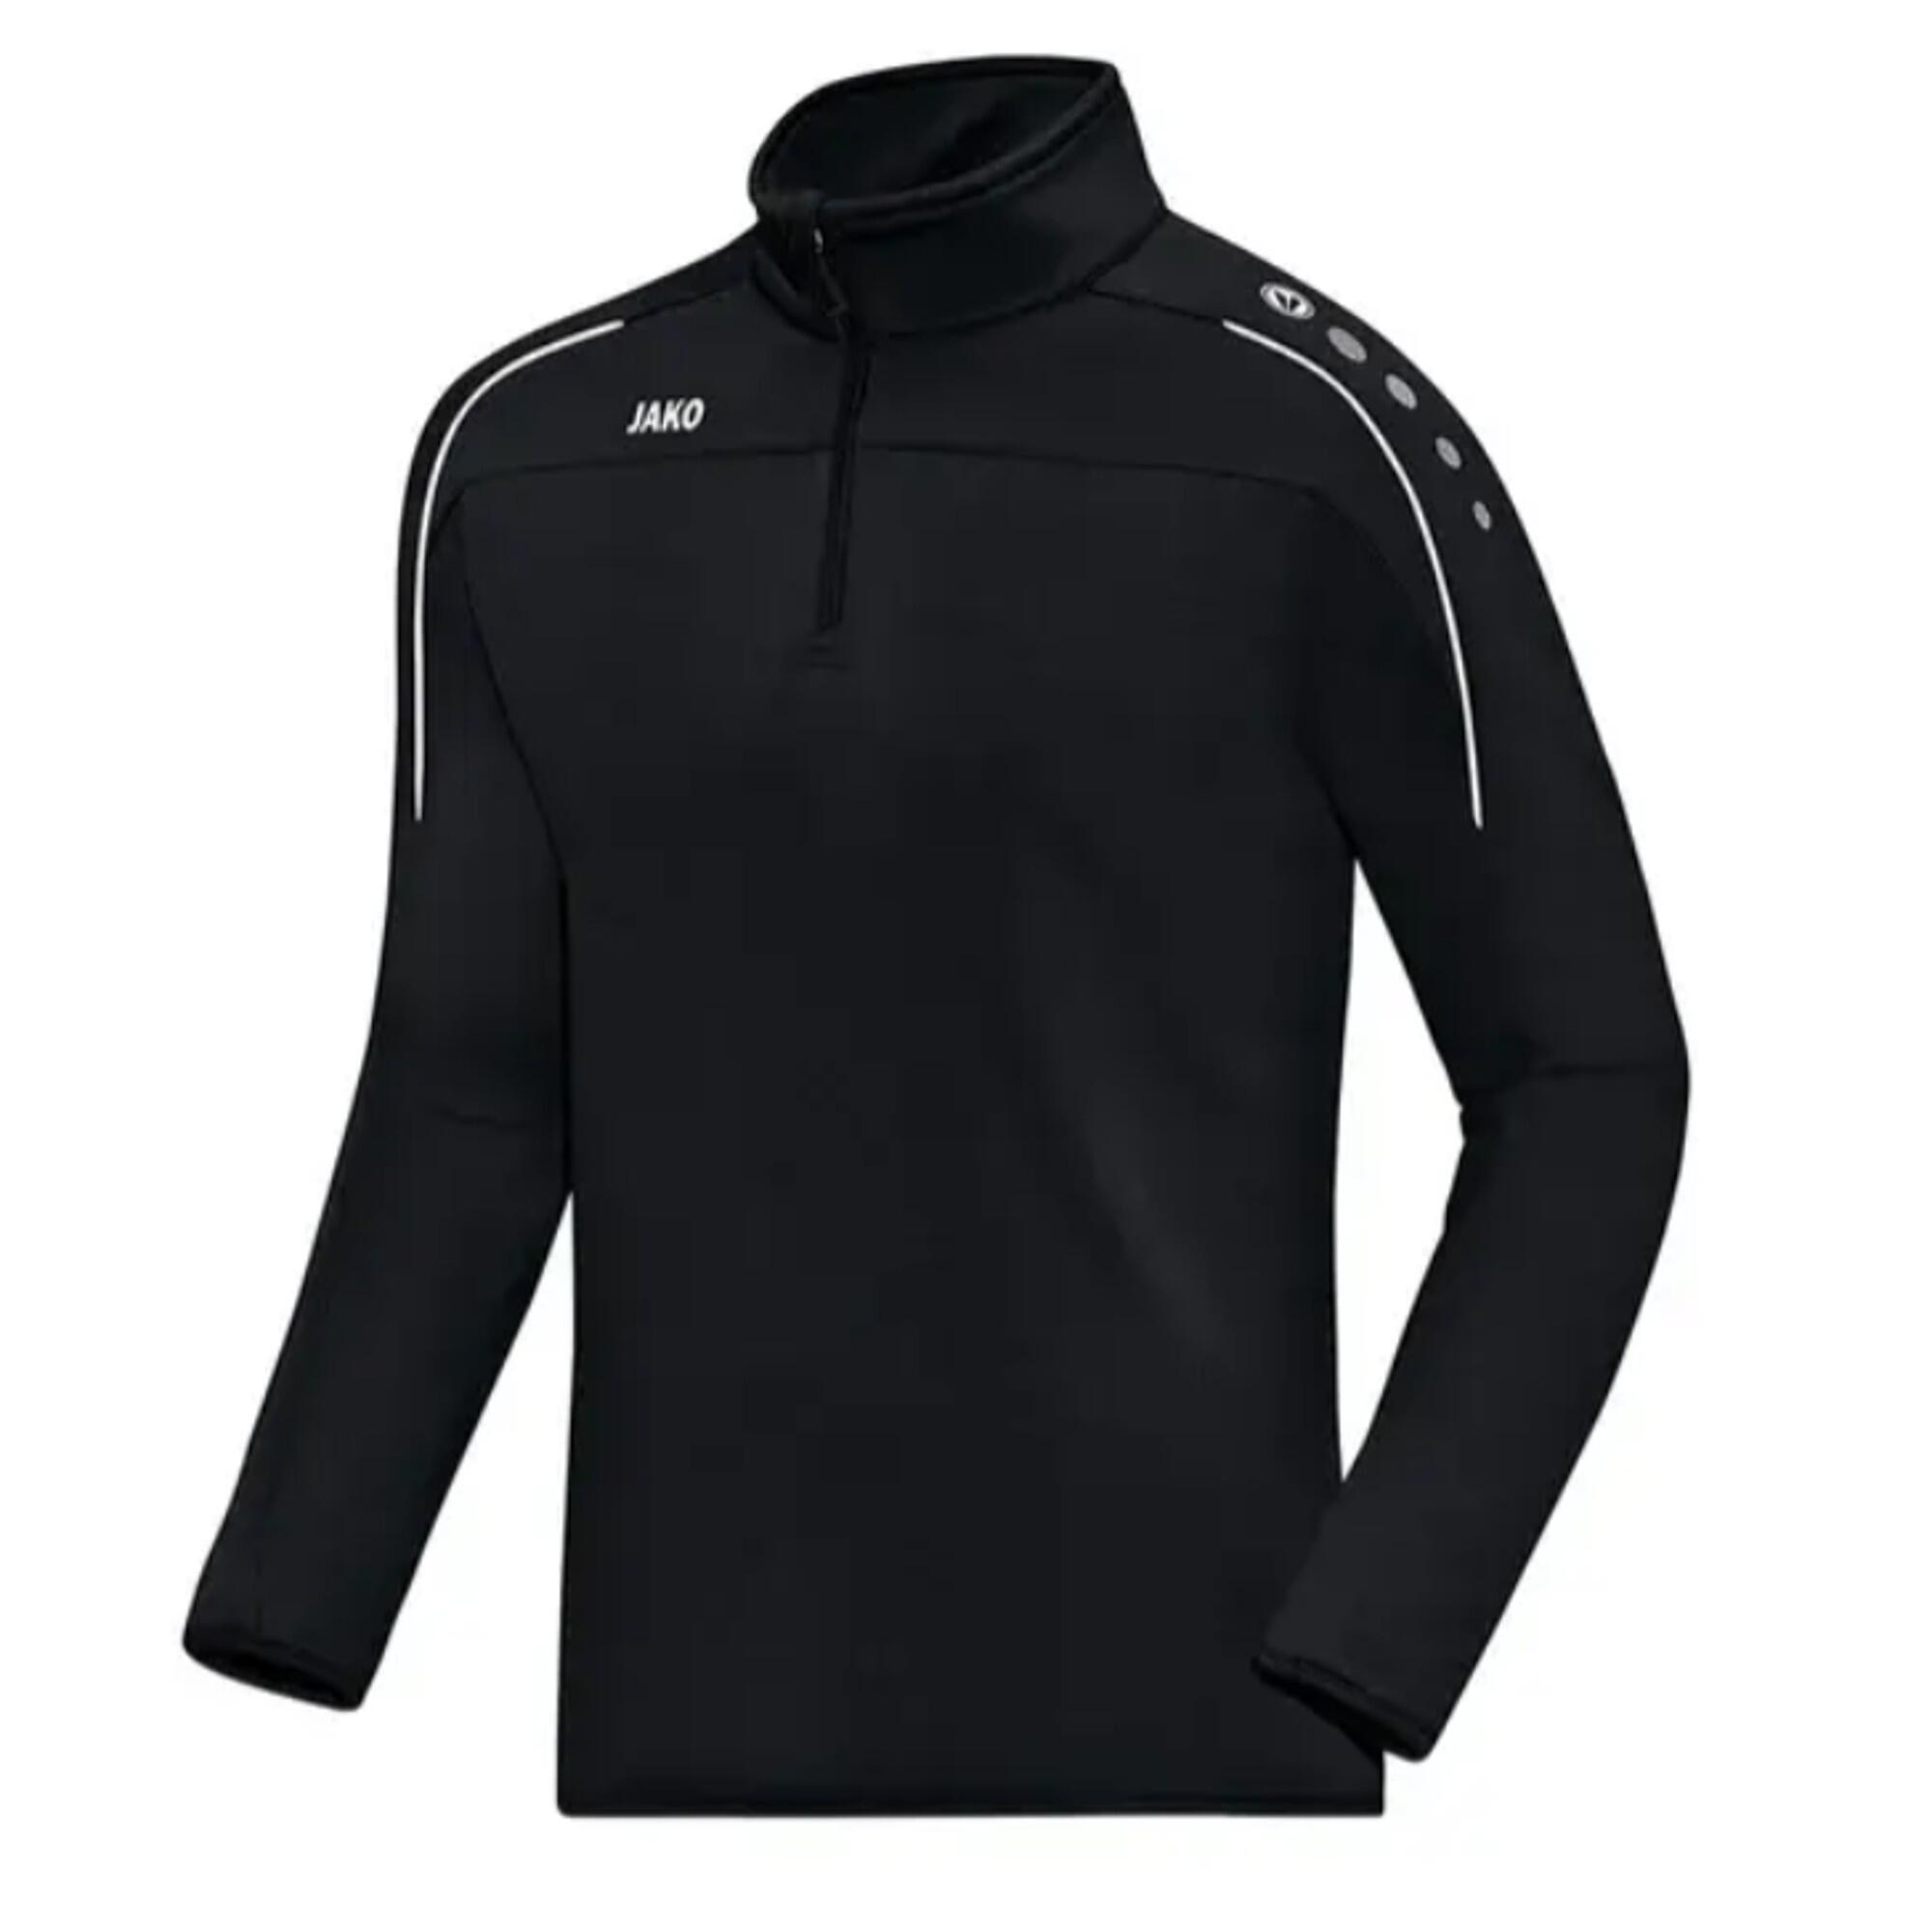 Damen/Herren Fussball Sweatshirt - Classico black